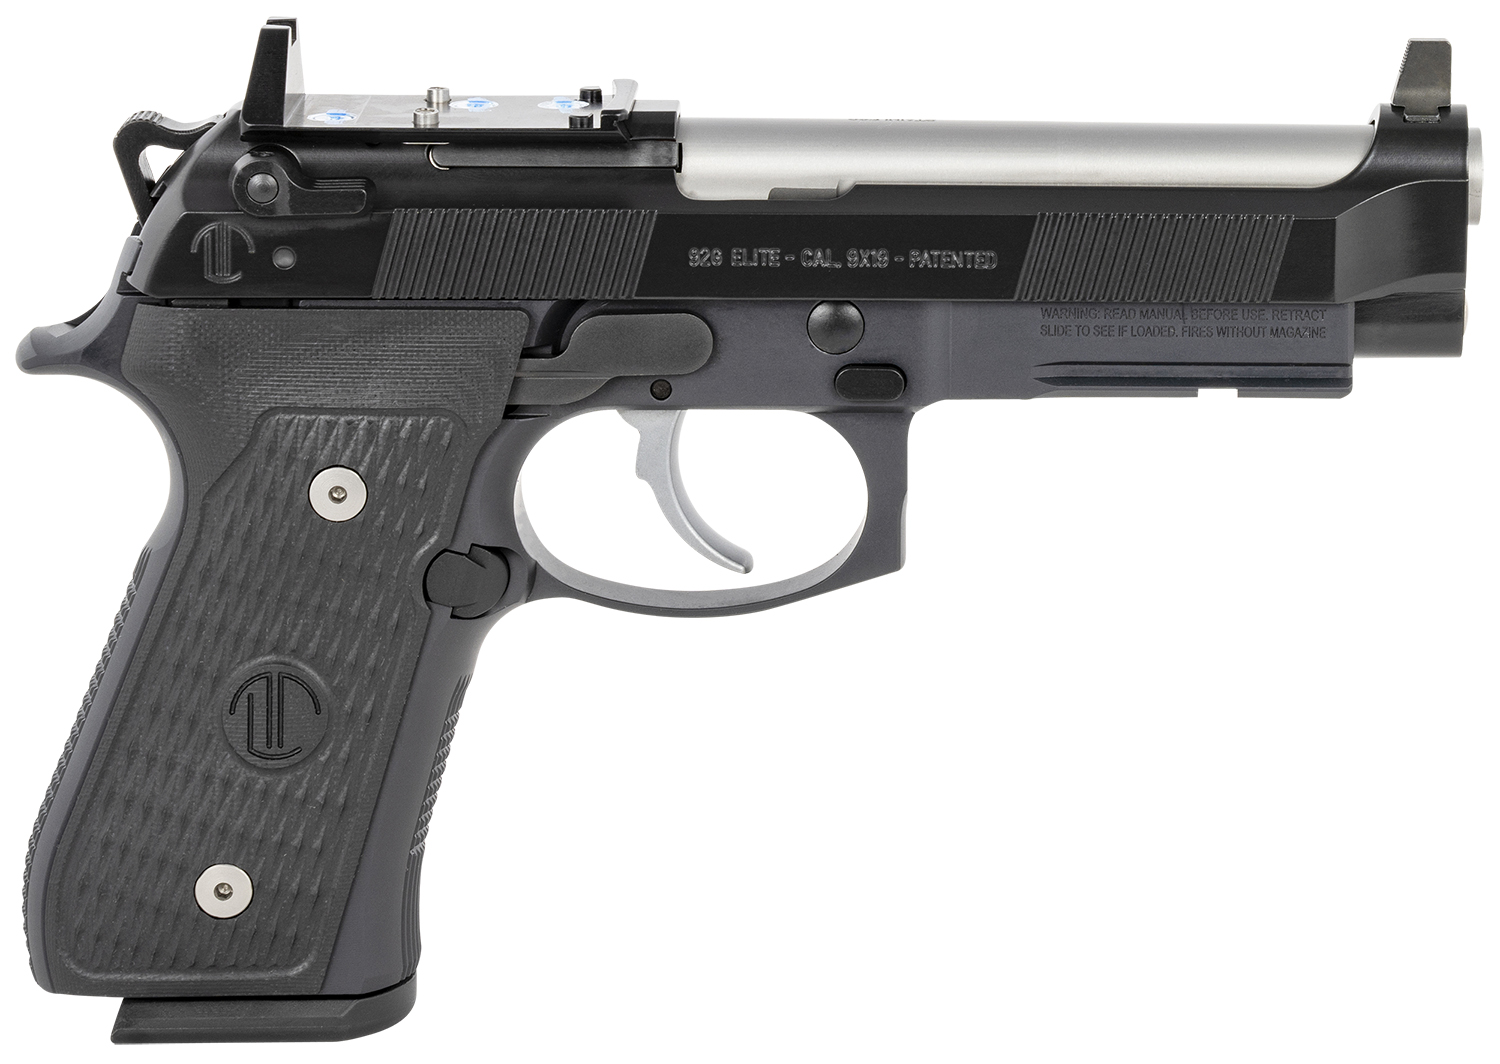 Langdon Tactical Tech LTT92ERDOTJ 92 Elite LTT  9mm Luger 4.70 Inch 171 Black Cerakote Black Steel with Red Dot Optic Cut Slide Black Polymer Grip Trigger Job | 810059260351